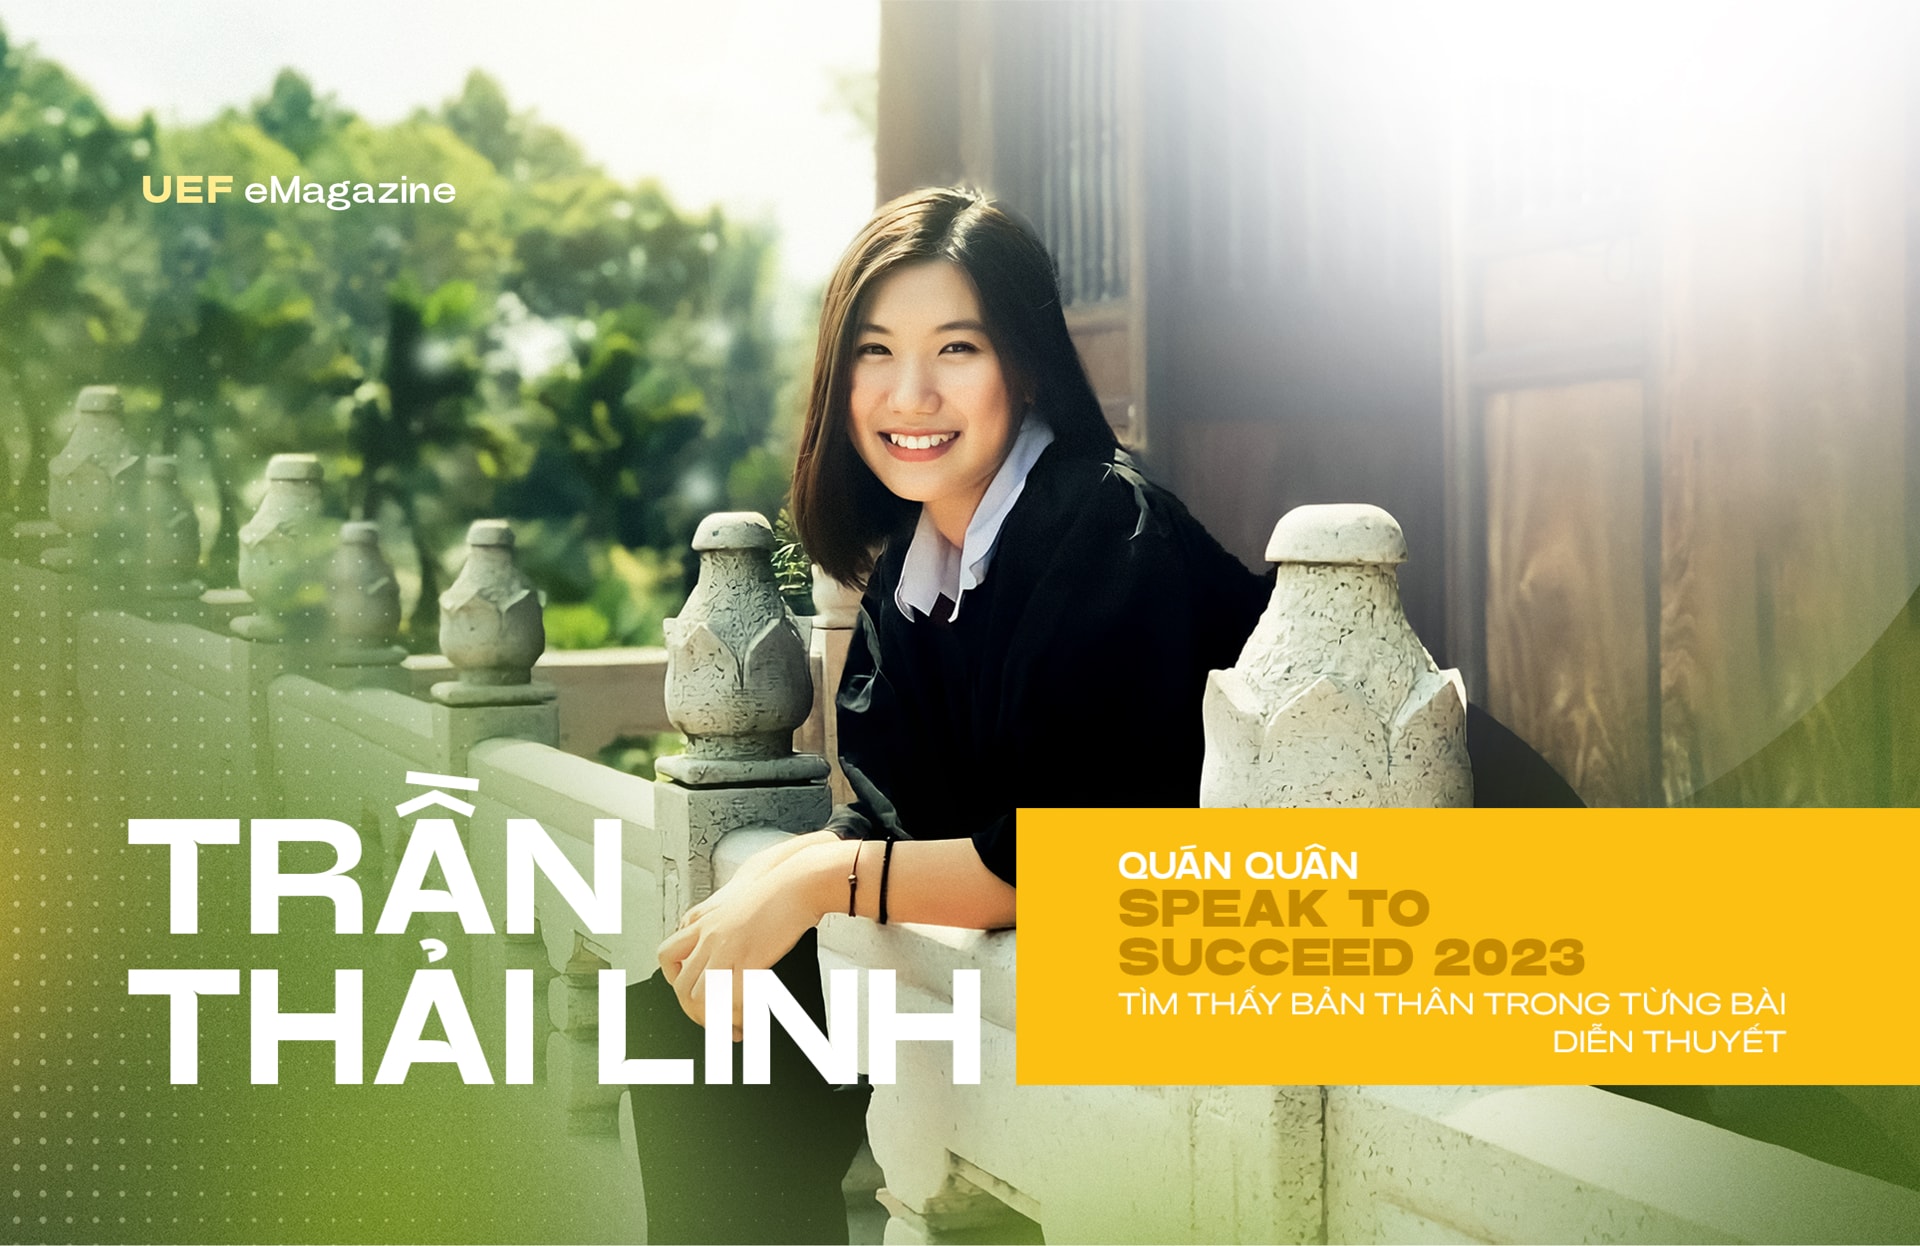 Trần Thải Linh - Quán Quân 'Speak to Success 2023' tìm thấy bản thân ...